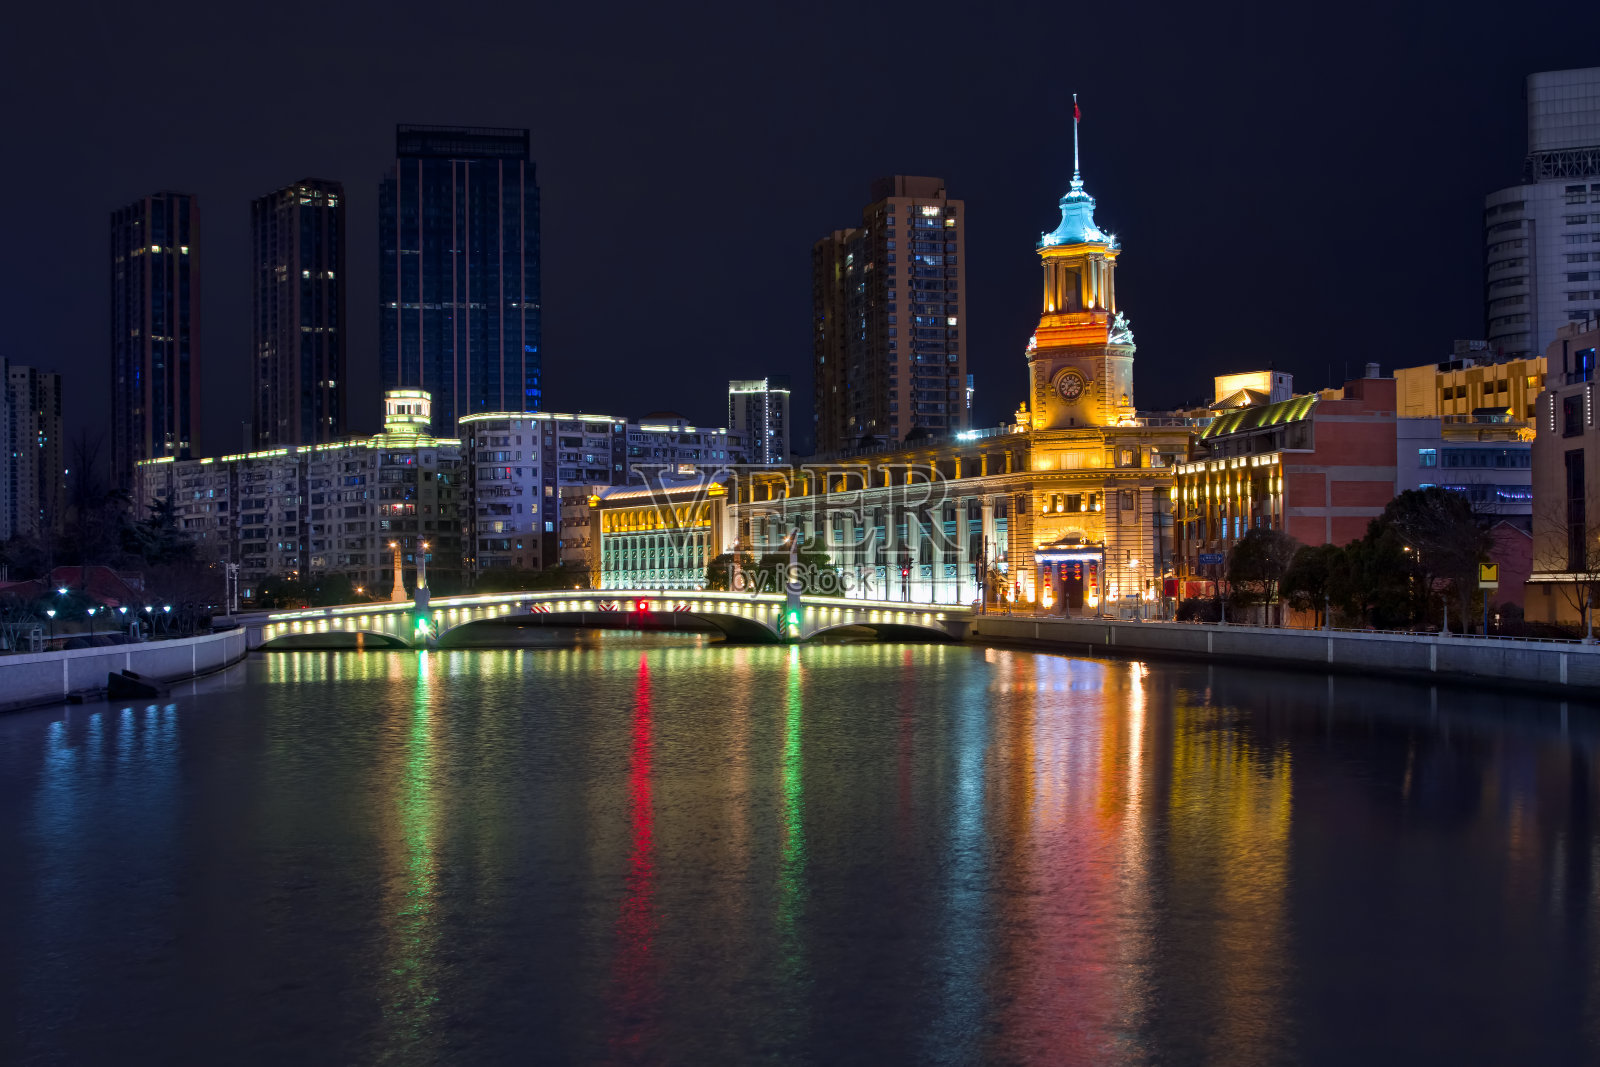 上海苏州河和邮政总局大楼夜景照片摄影图片